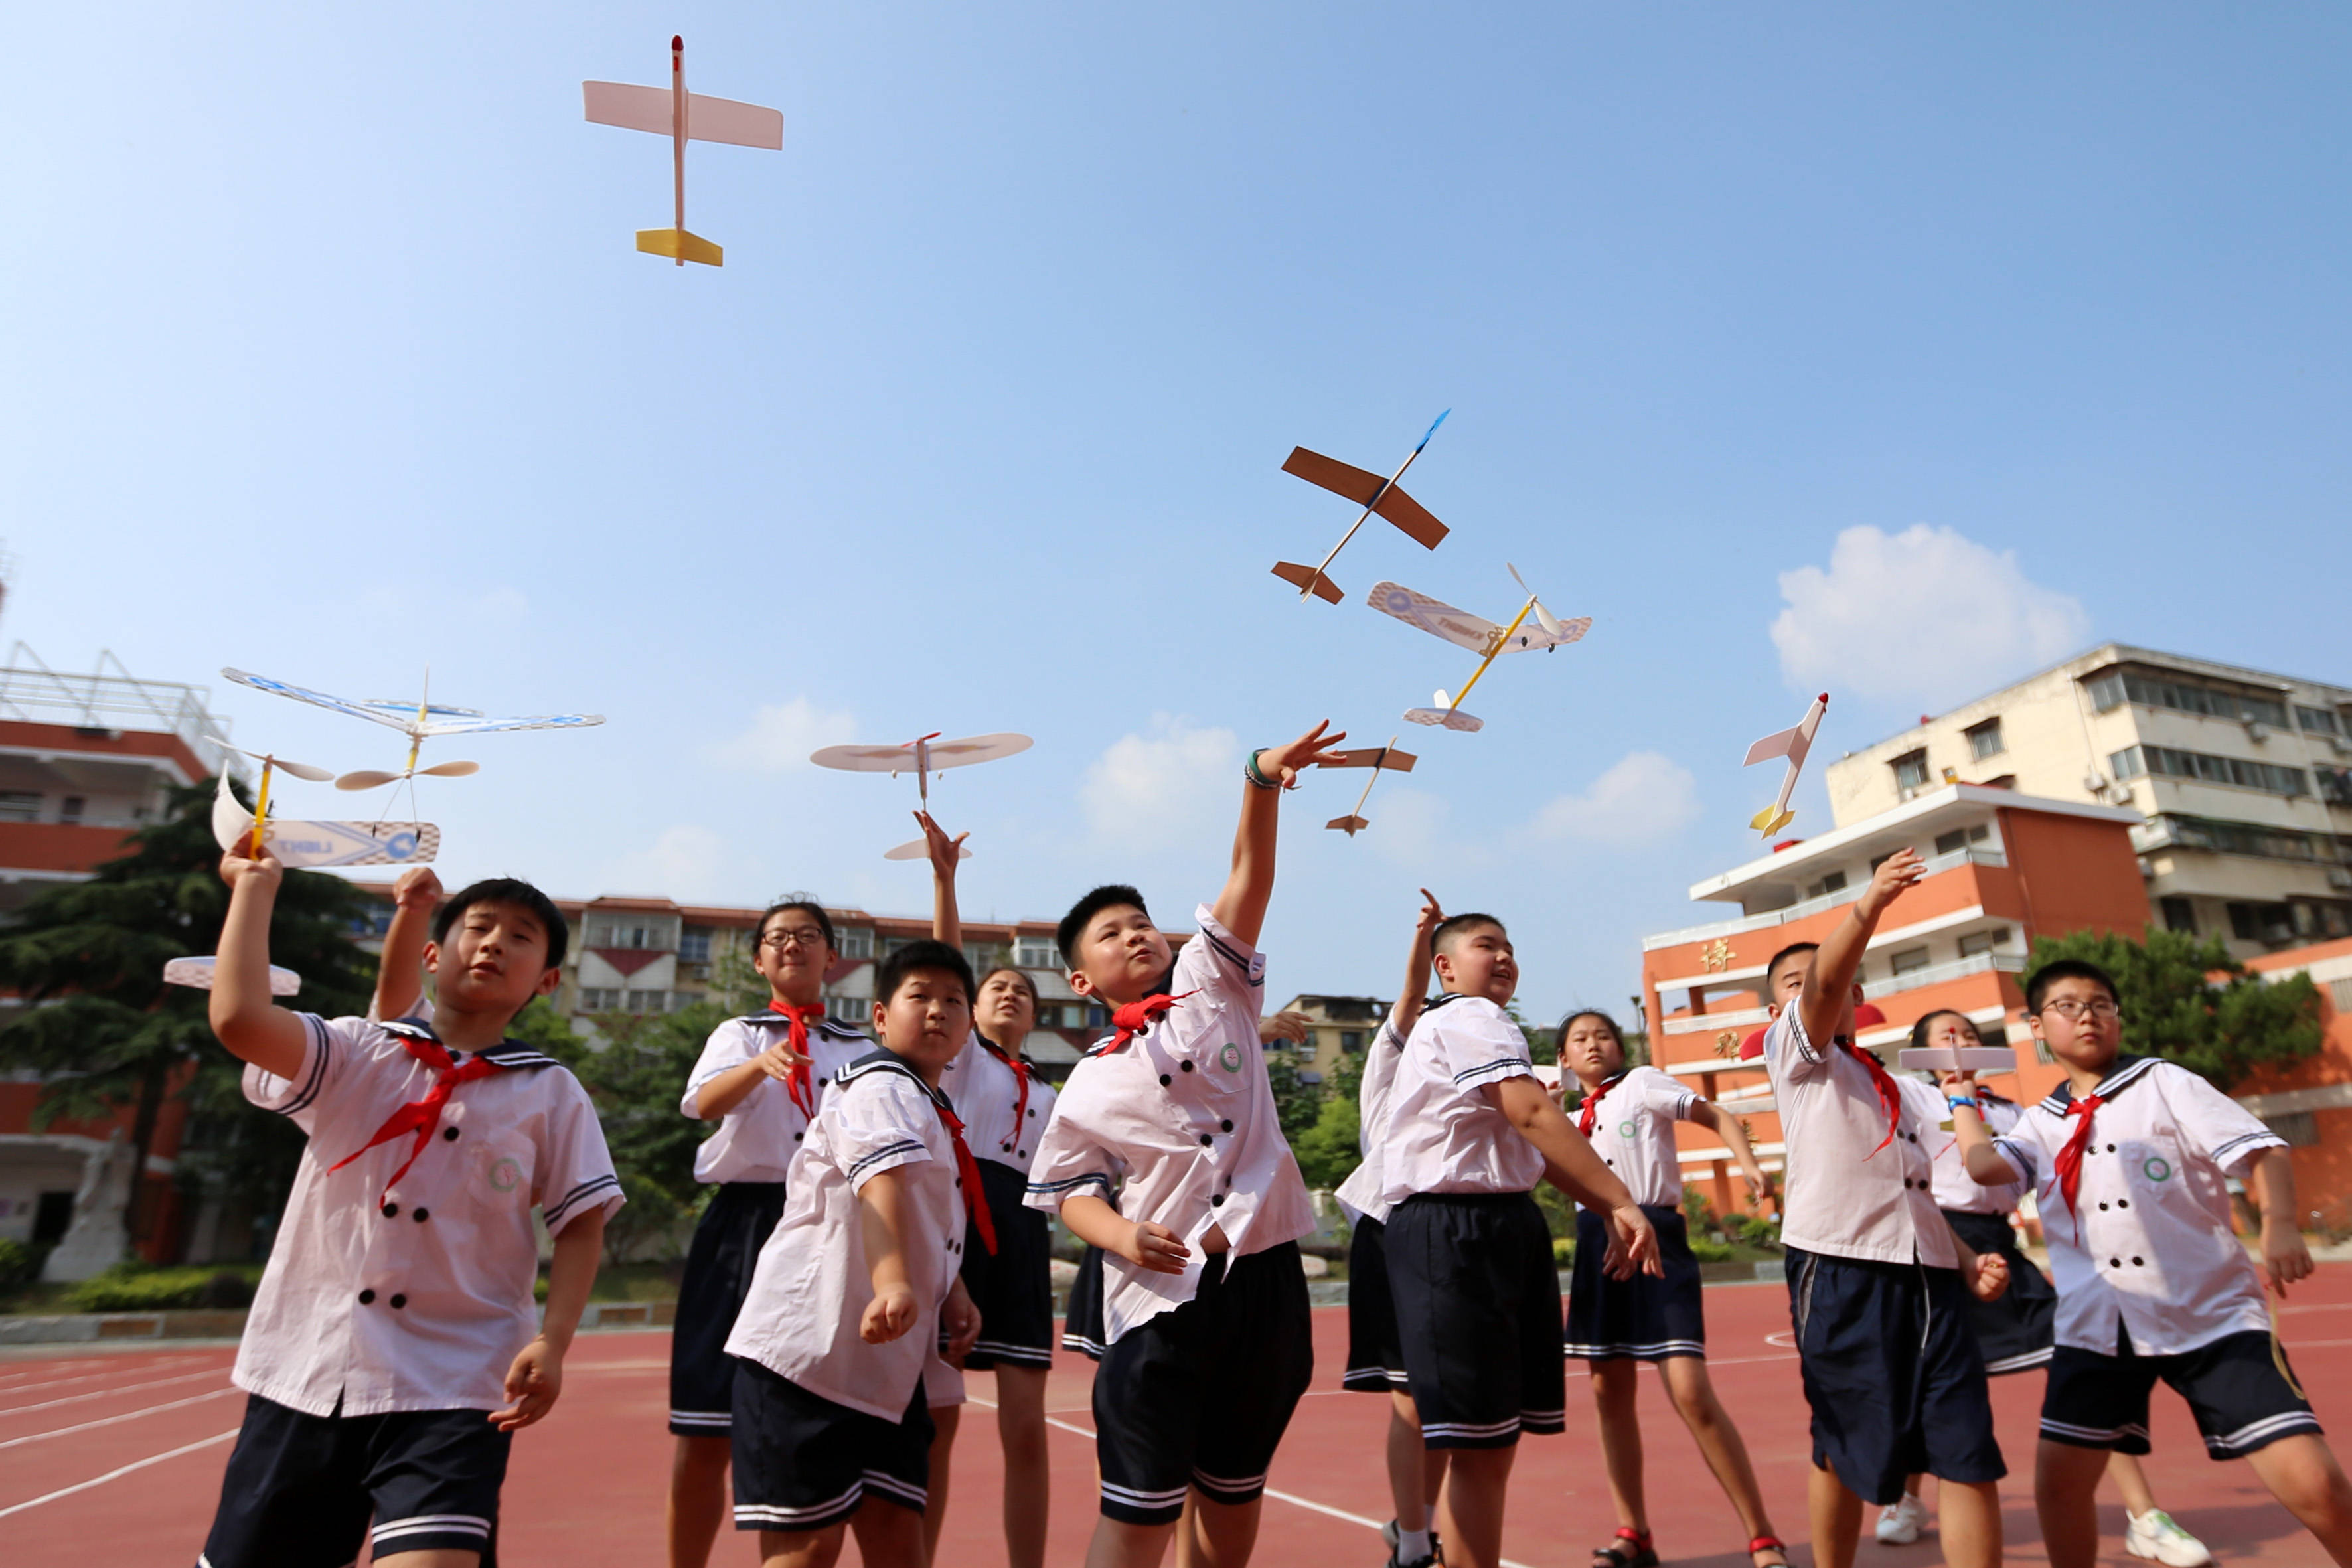 7月16日,淮北市第三实验小学的学生进行航模演示.返回搜狐,查看更多